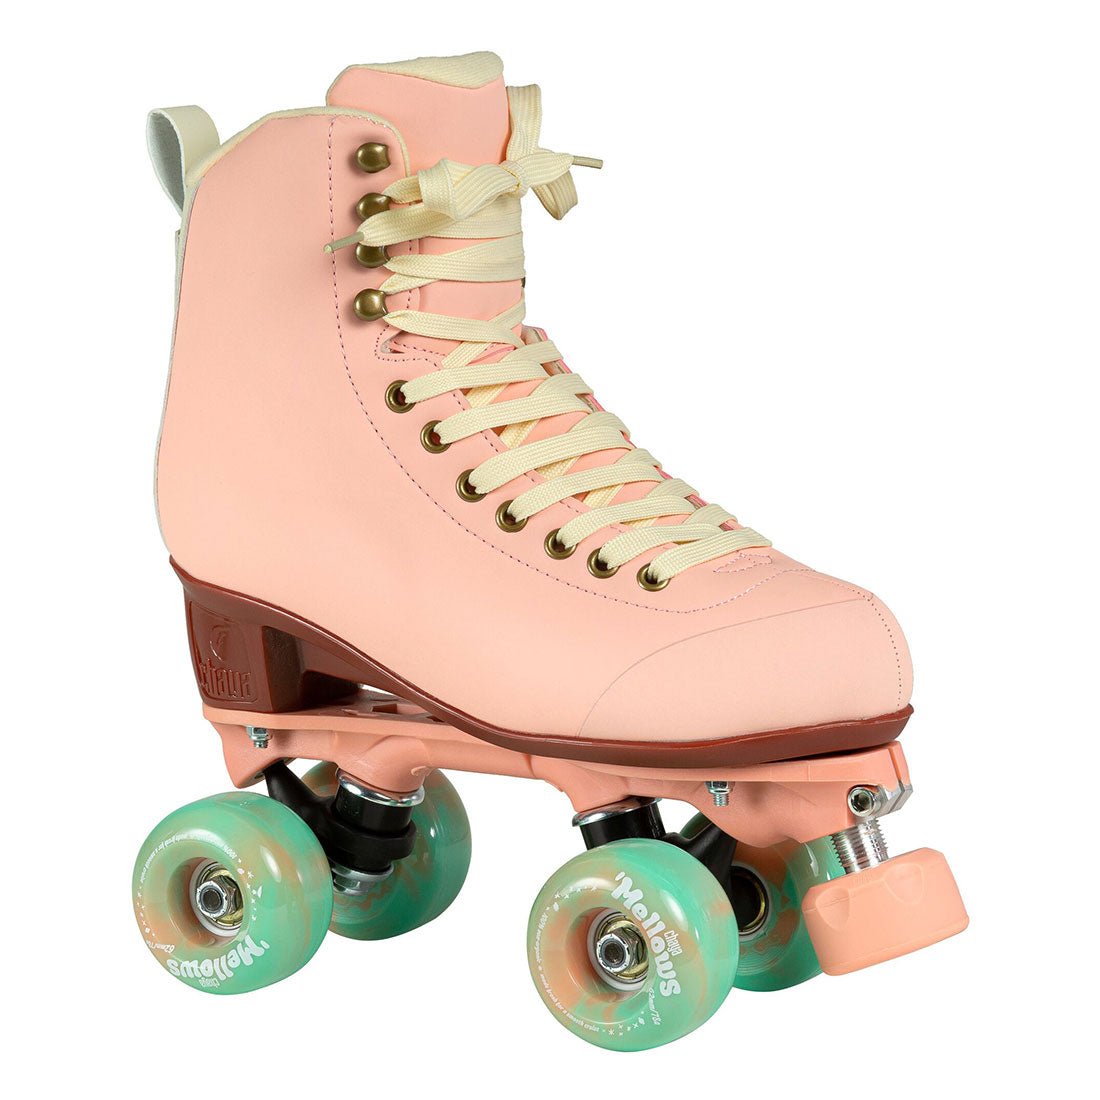 Chaya Melrose Elite Skate - Dusty Rose Roller Skates